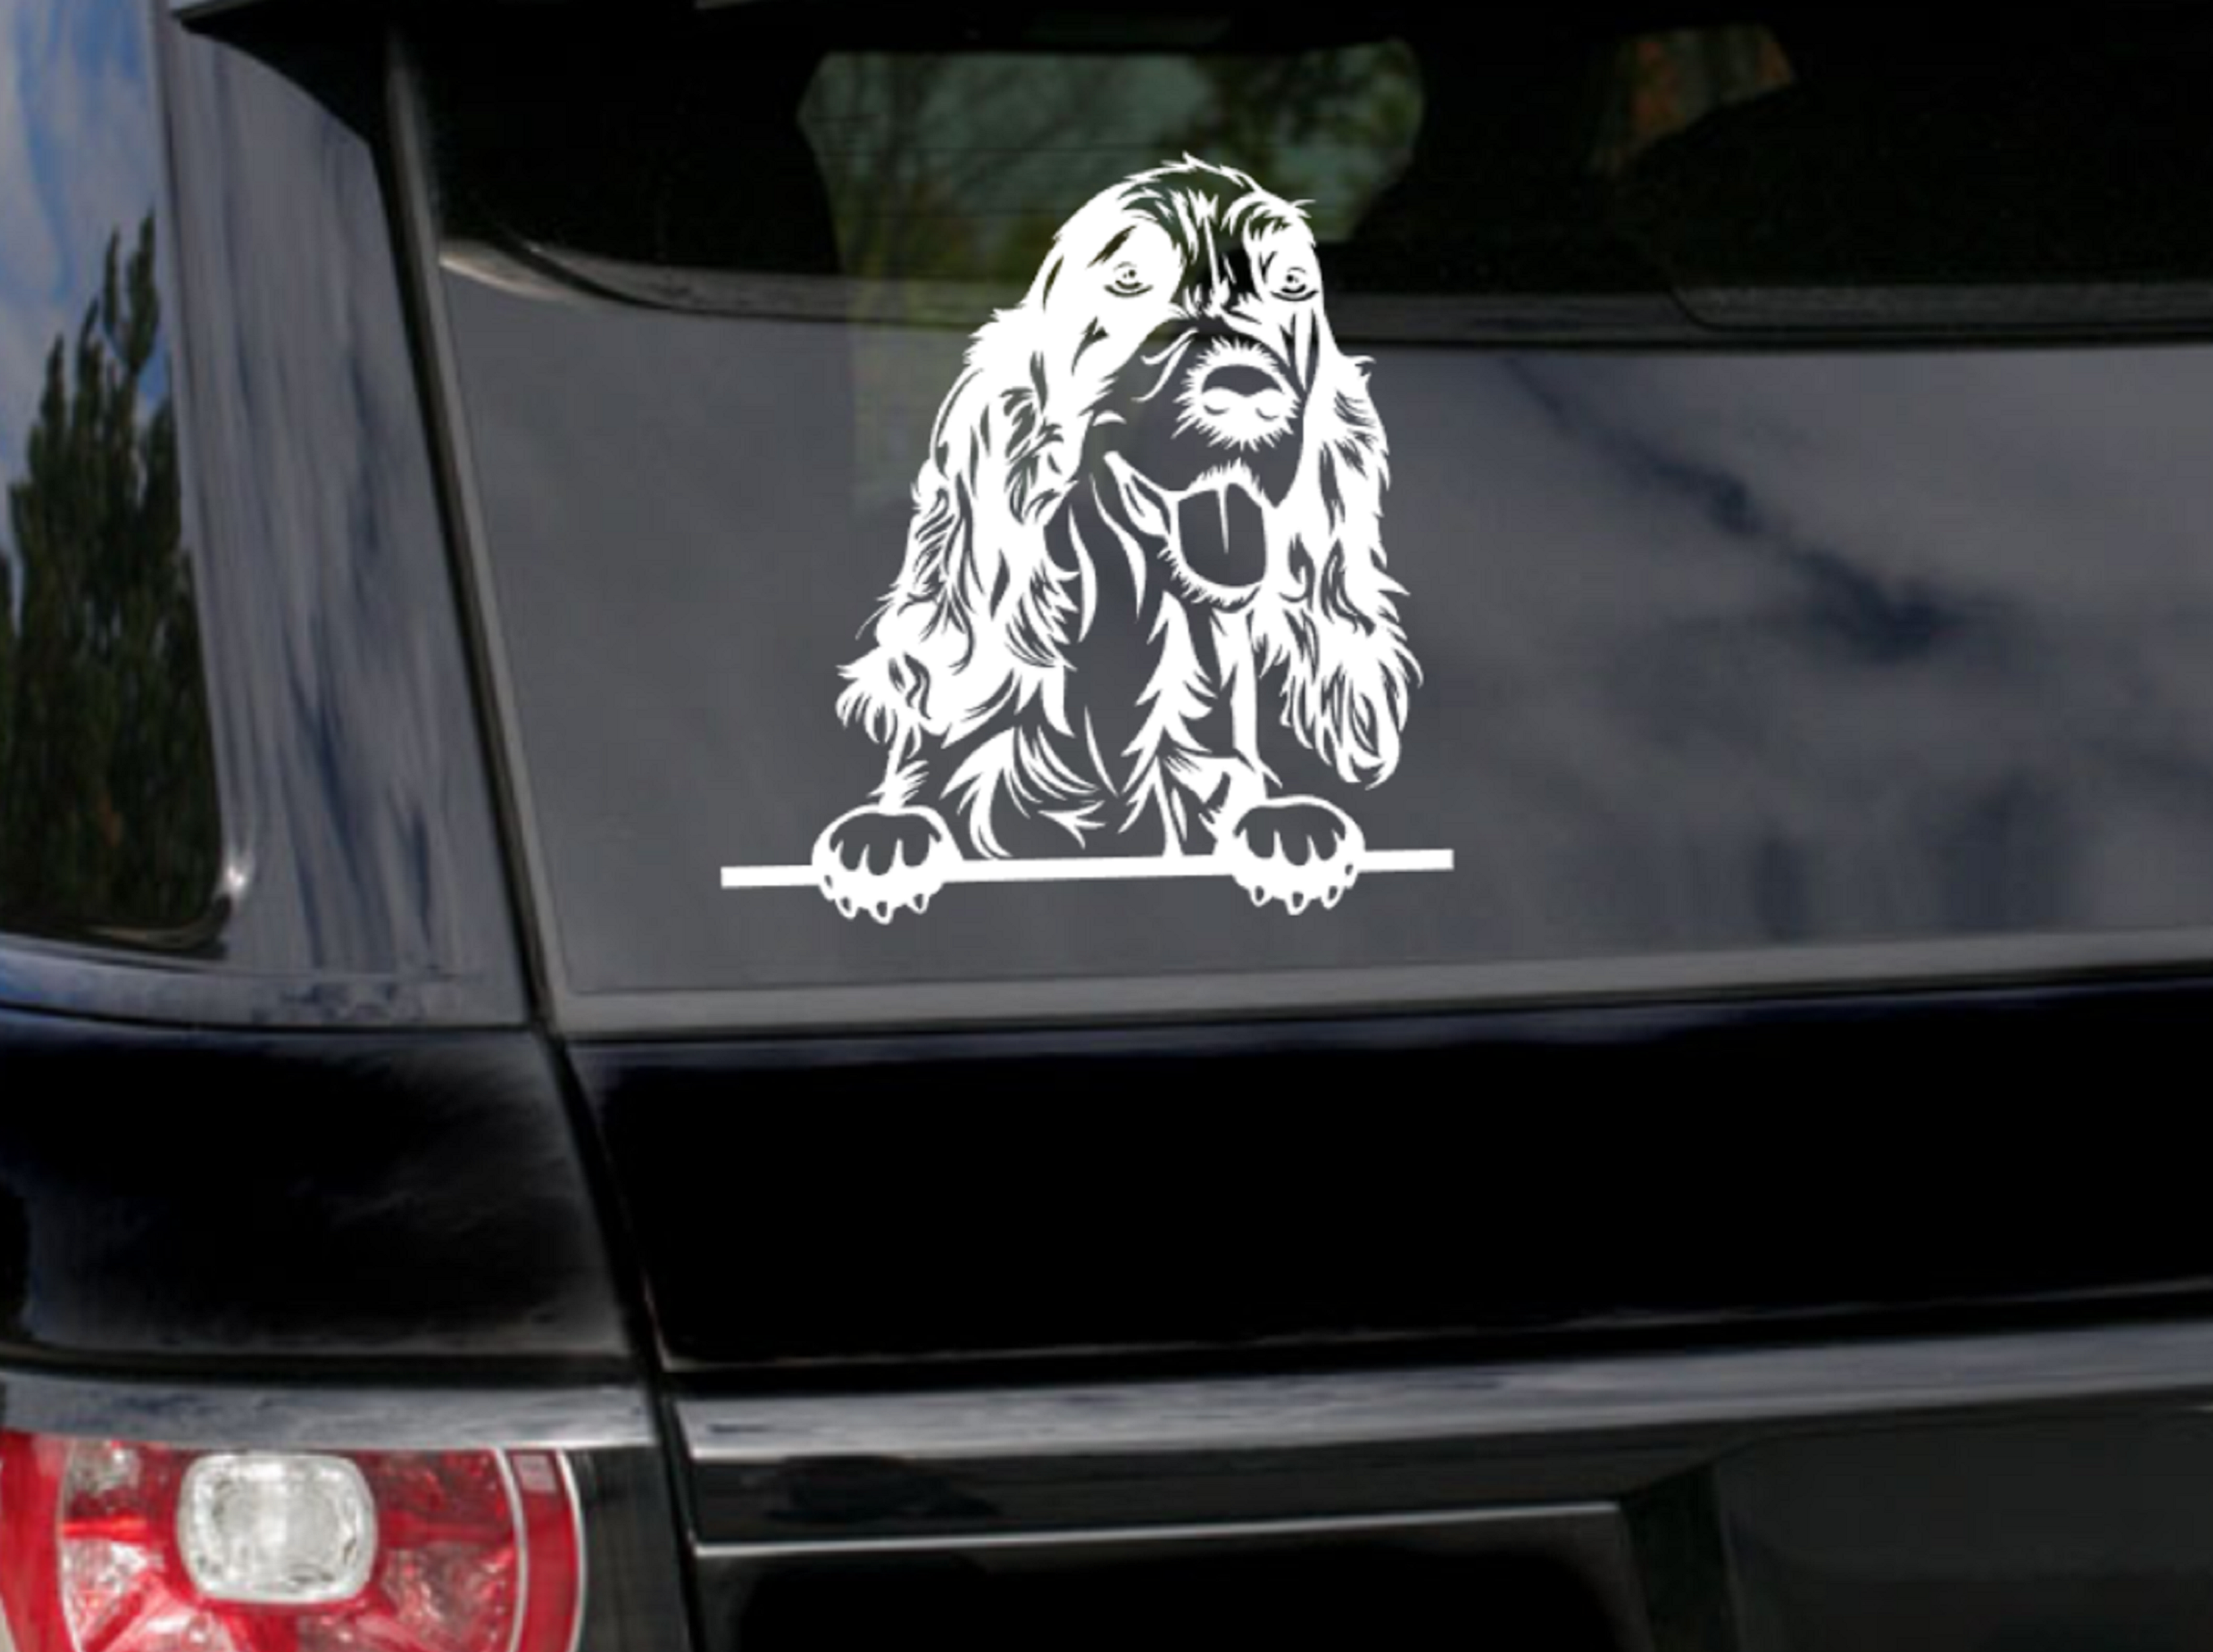 Peeking English Cocker Spaniel Car Sticker - My Crafty Dog